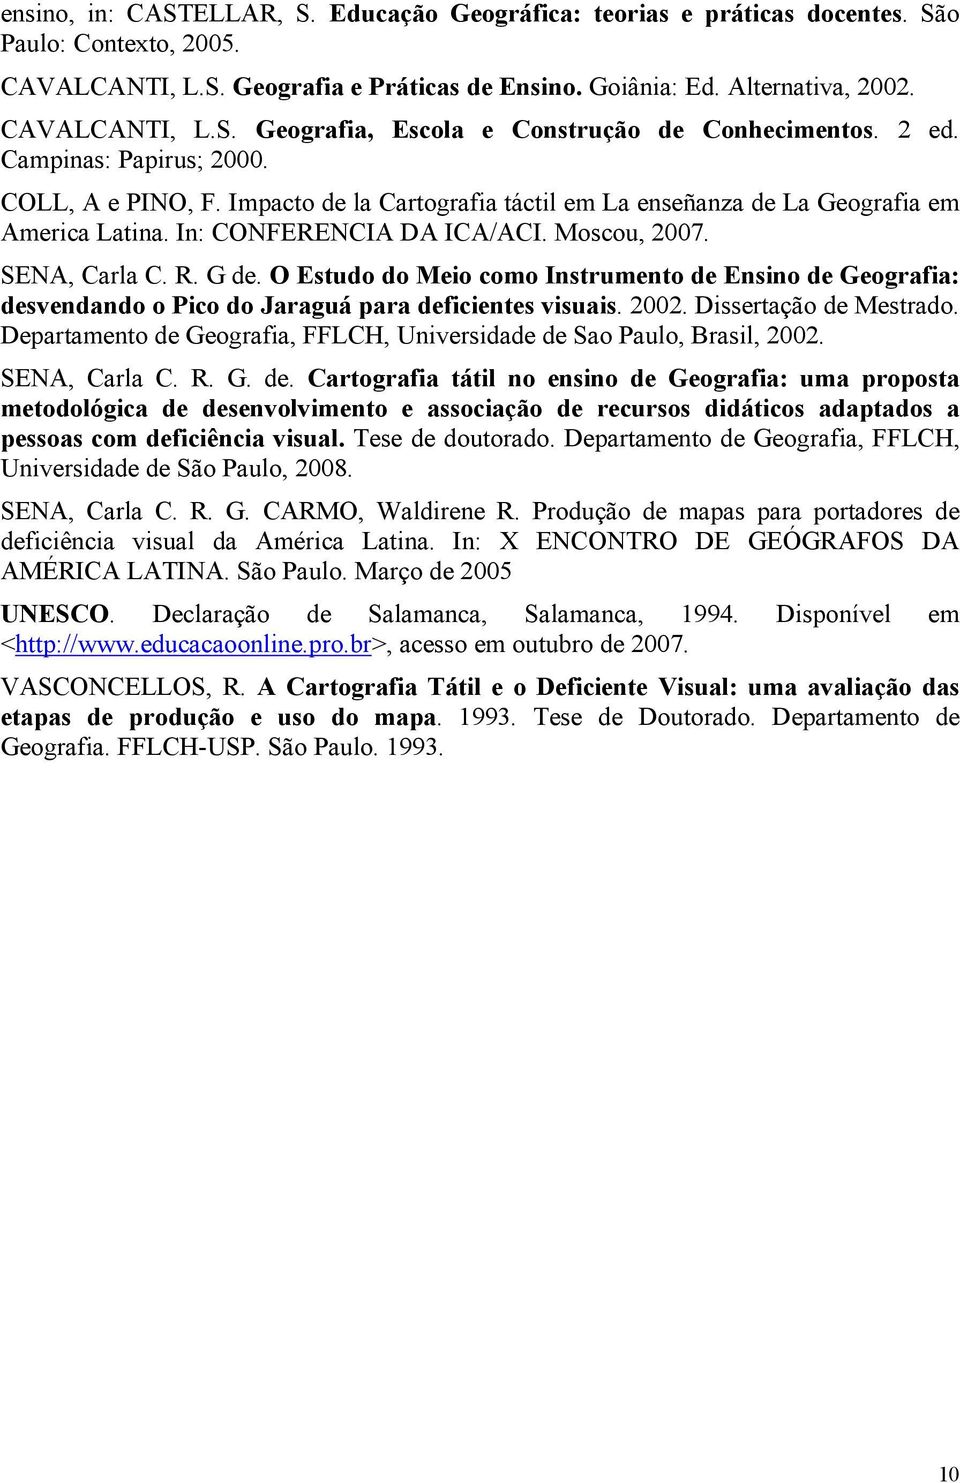 O Estudo do Meio como Instrumento de Ensino de Geografia: desvendando o Pico do Jaraguá para deficientes visuais. 2002. Dissertação de Mestrado.